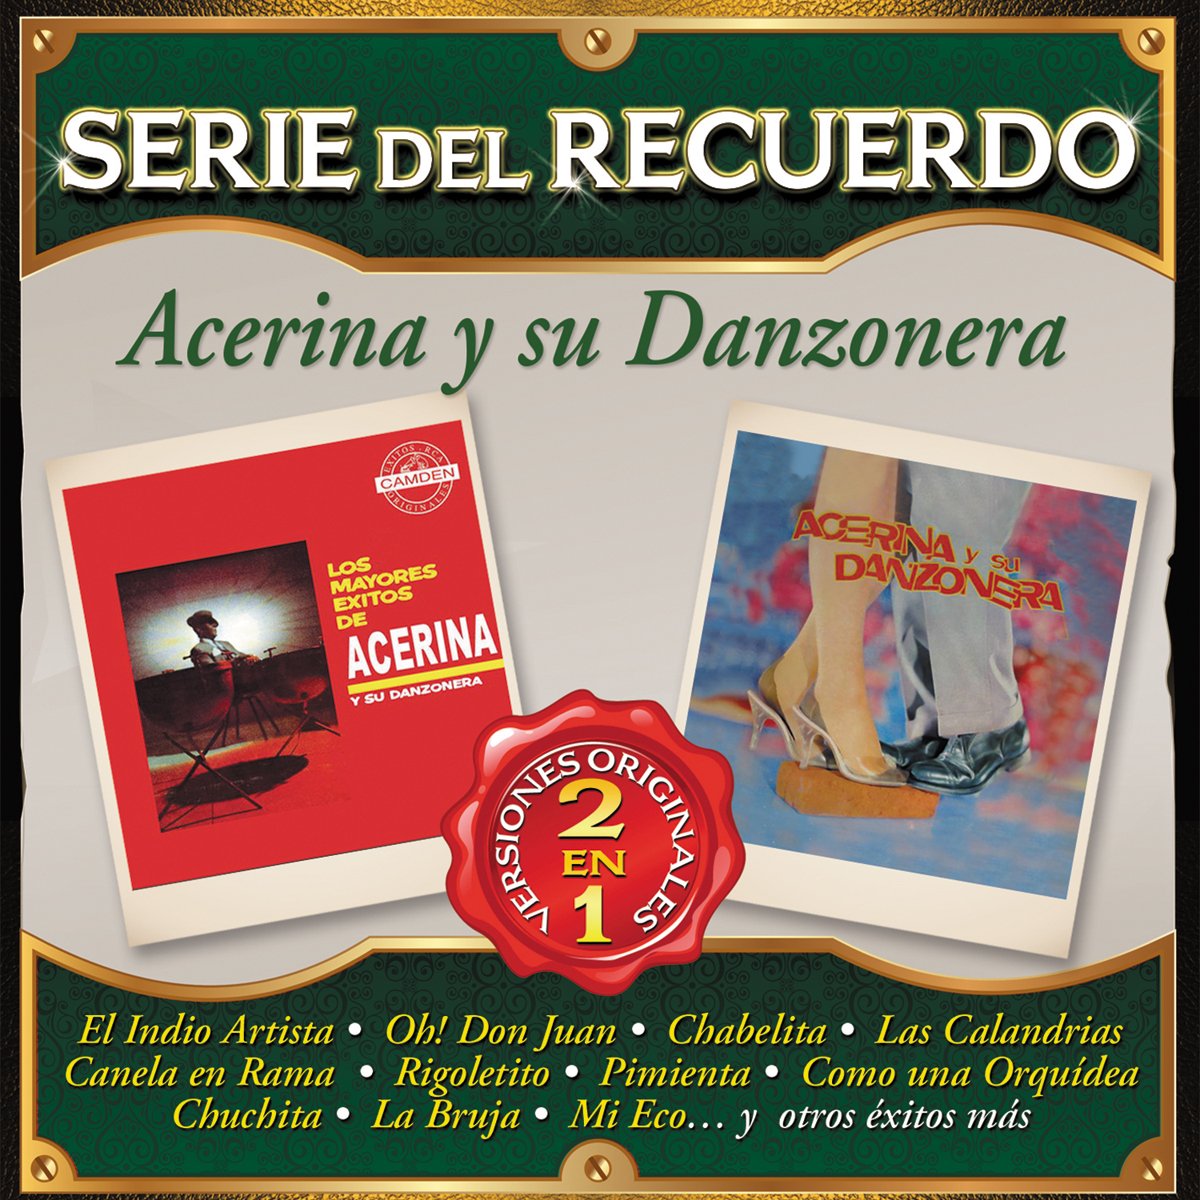 Cd Acerina y Su Danzonera Serie Del Recuerdo 2 en 1